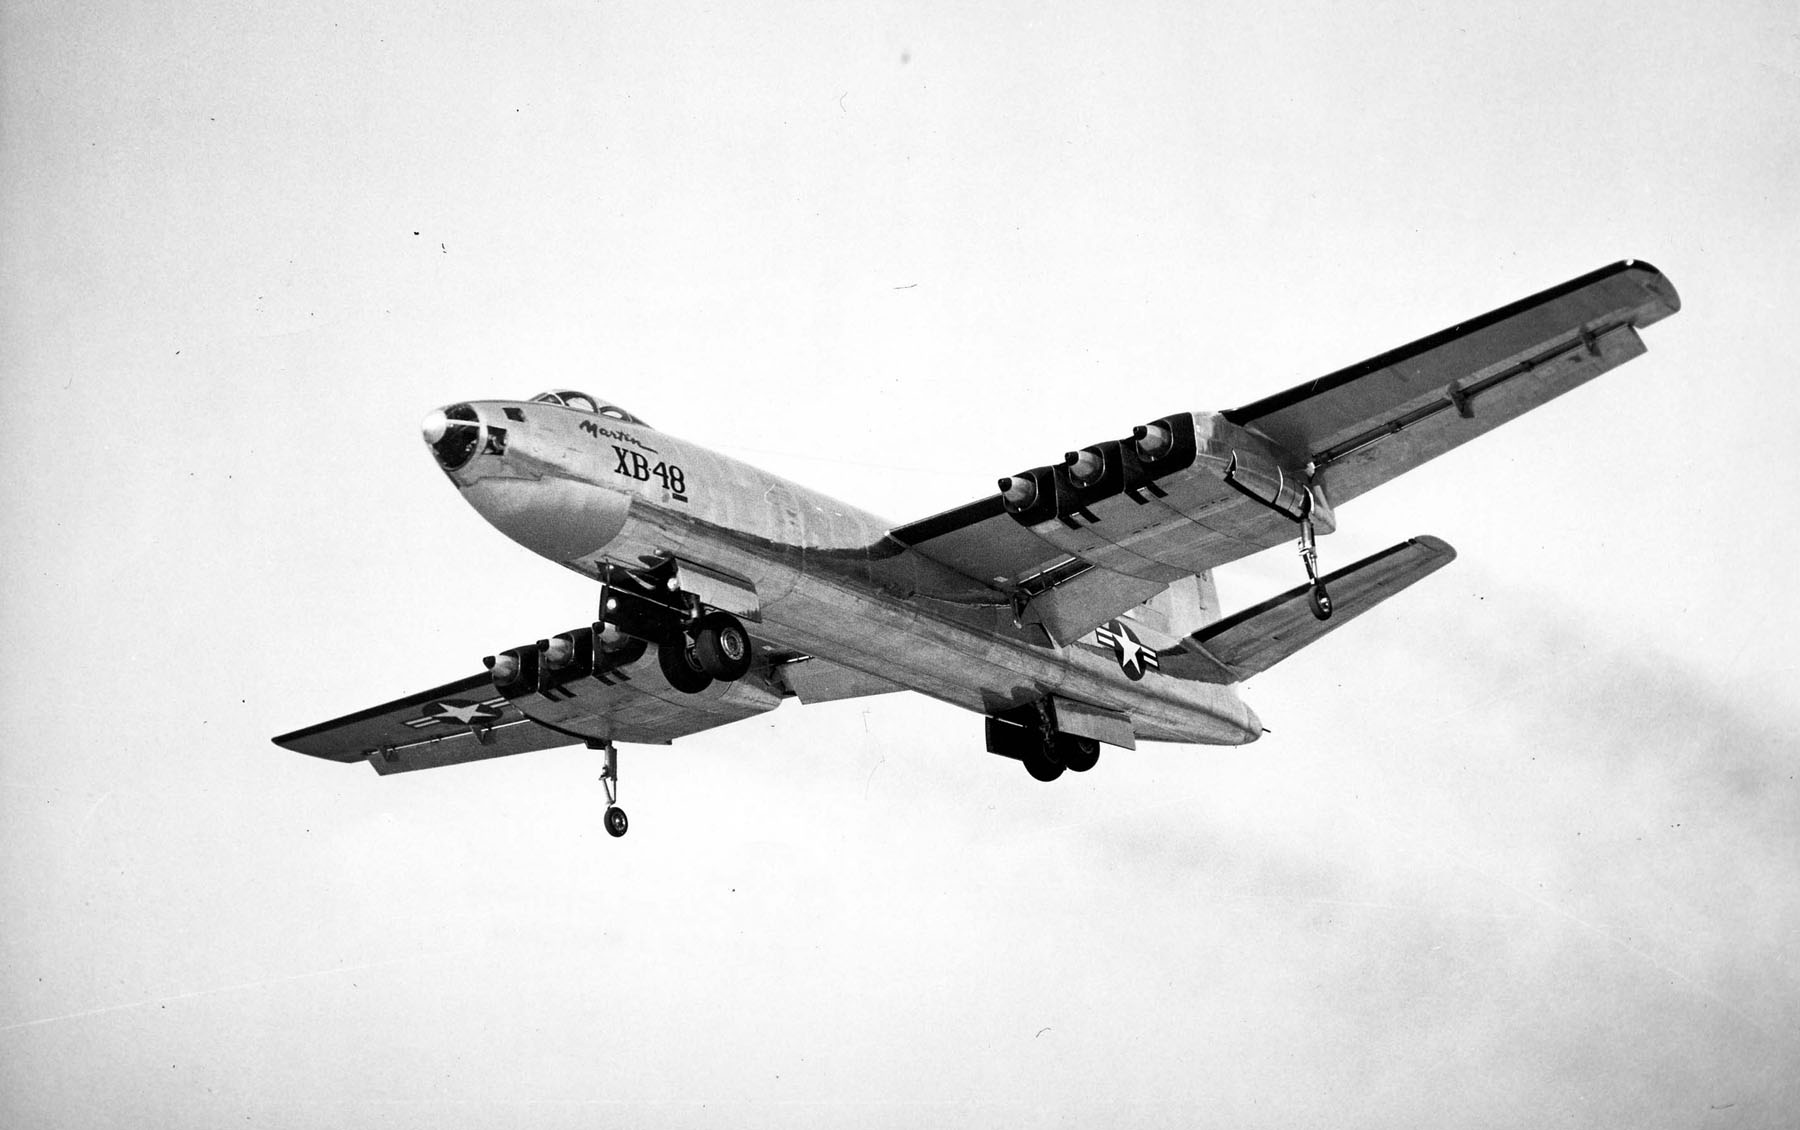 The XB-48.